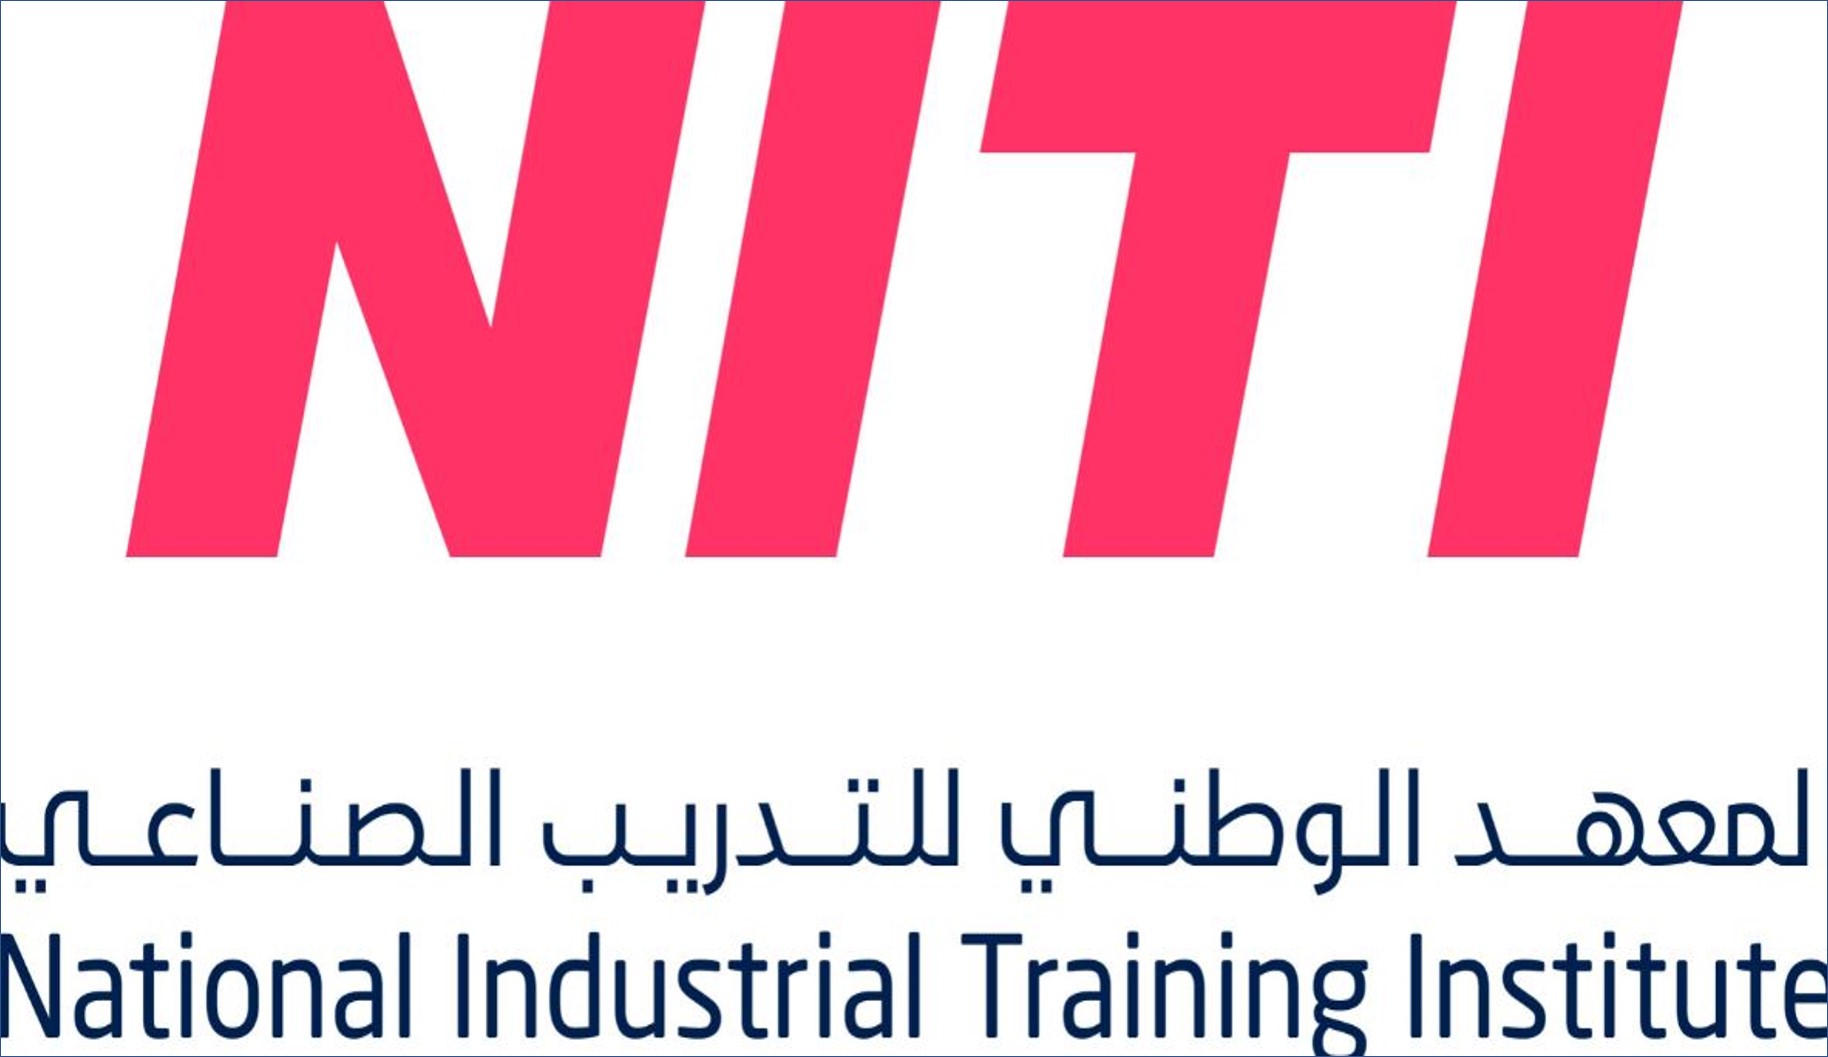 المعهد الوطني للتدريب الصناعي يعلن عن فرص عمل بعد التدريب